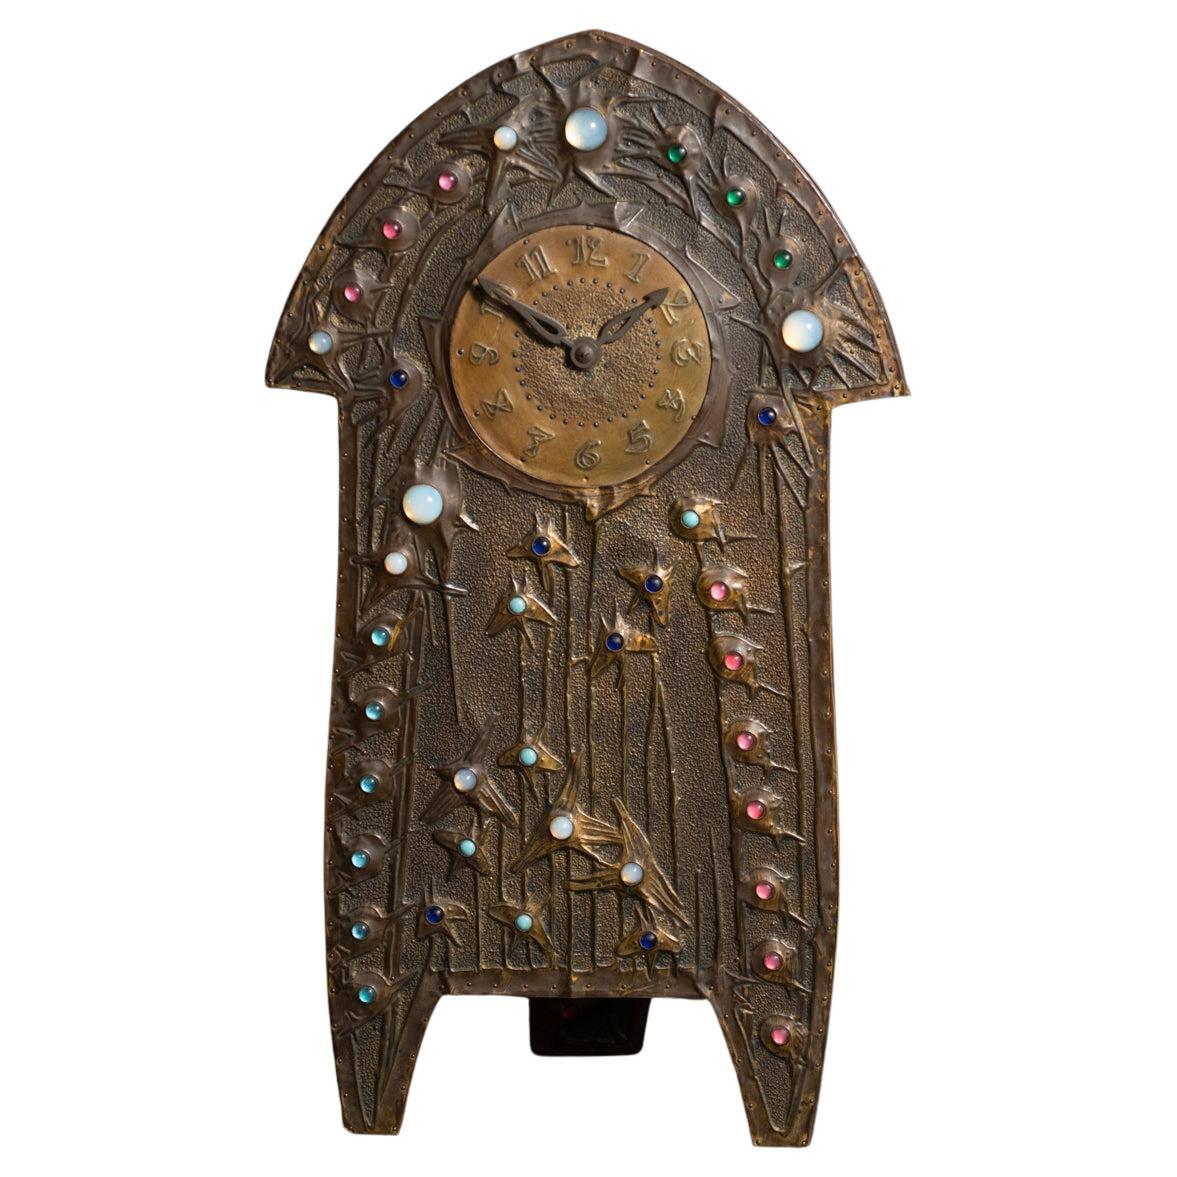 Jeweled Art Nouveau Repoussé Clock by Alfred Daguet, with Original Mechanisim For Sale